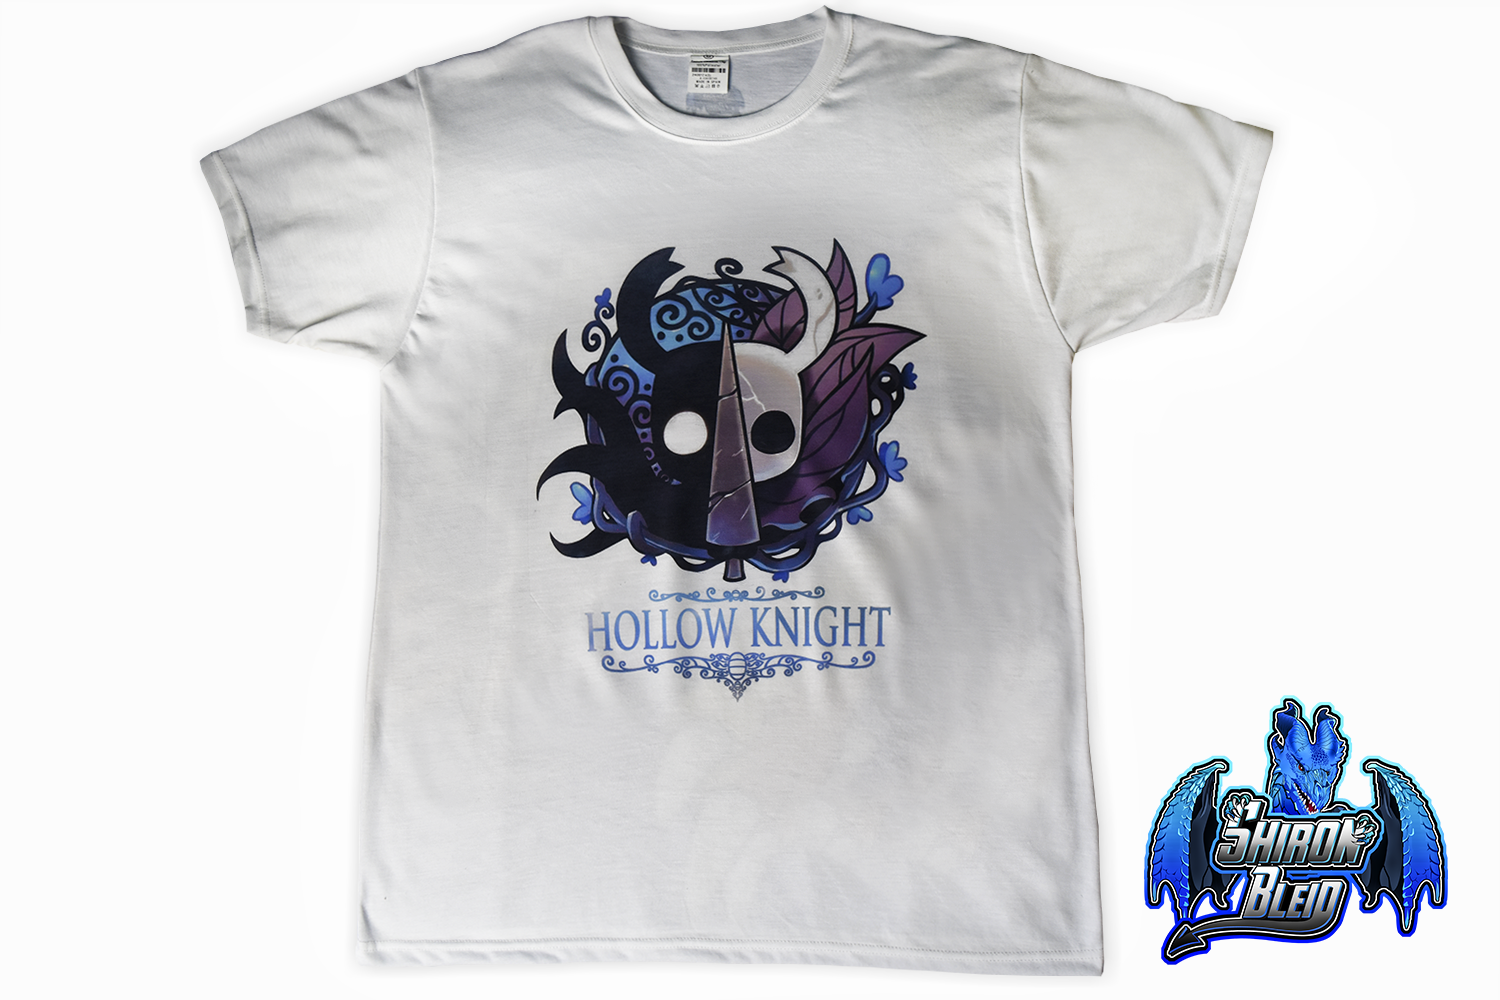 misericordia calibre Sensible Camiseta Hollow Knight - Tienda diseño y artesania personalizado Almeria